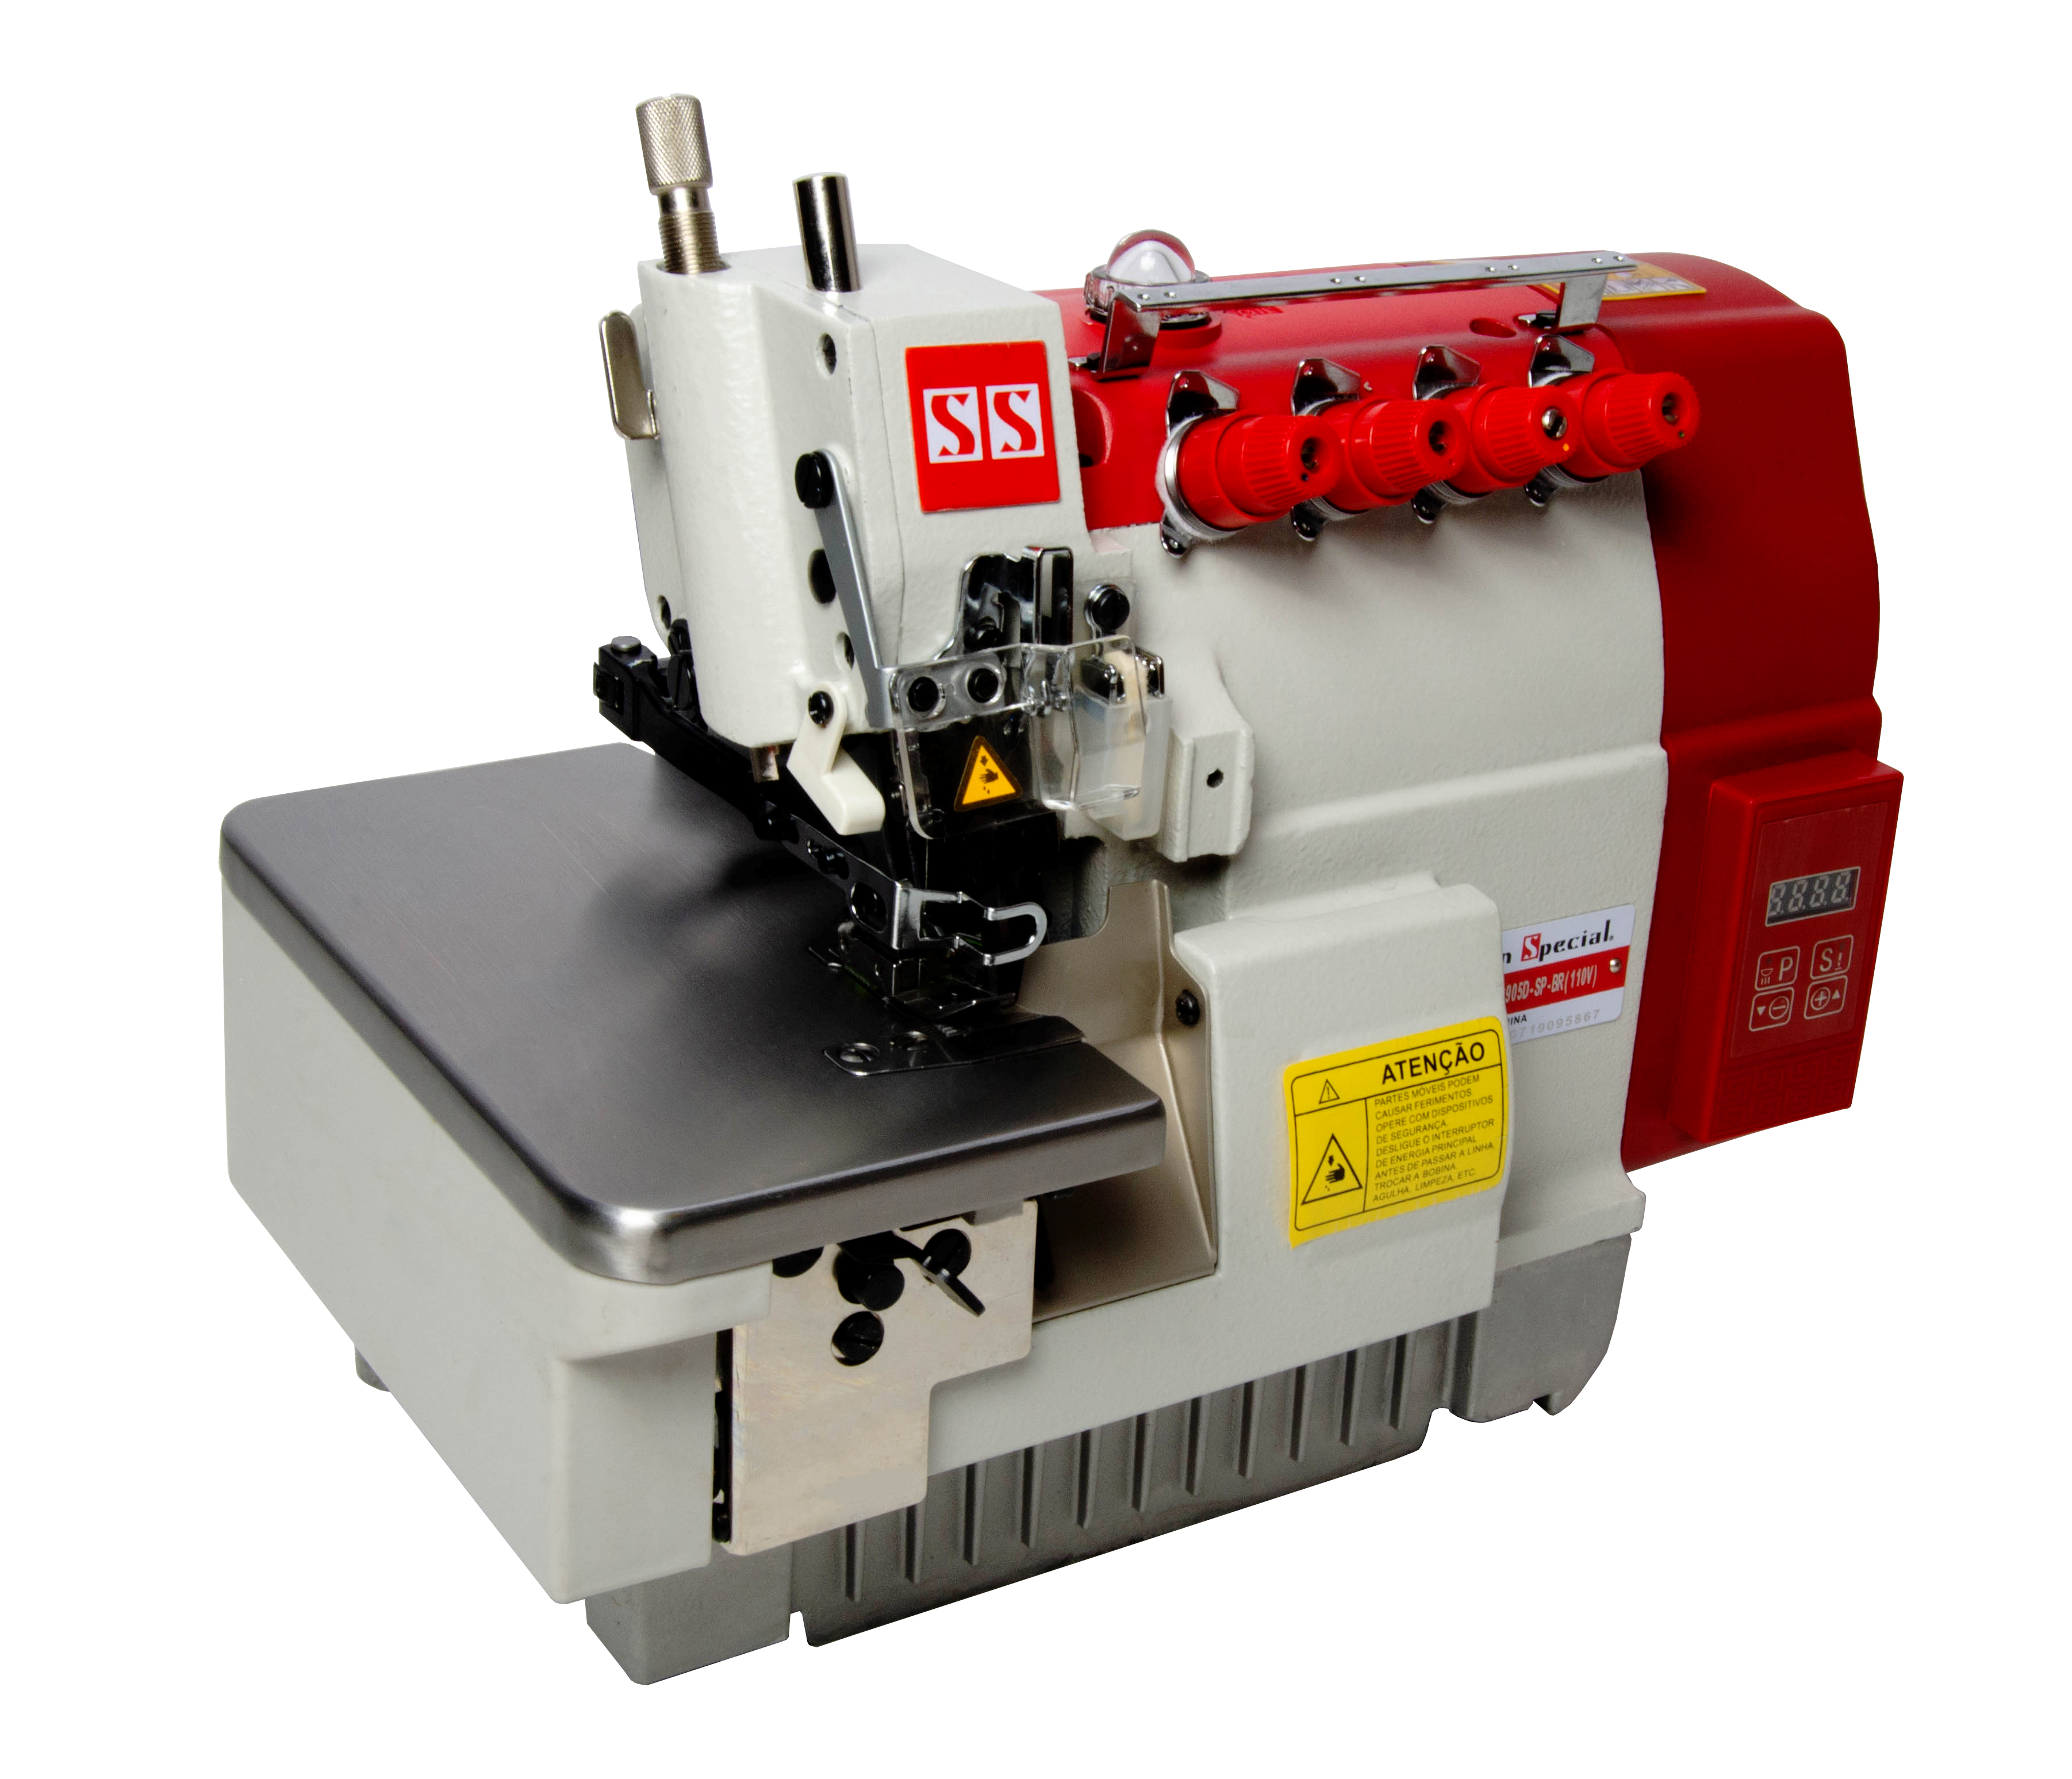 Máquina Costura Interlock Industrial com Control Box Acoplado 110v SS9905D-SP-BR - Sun Special